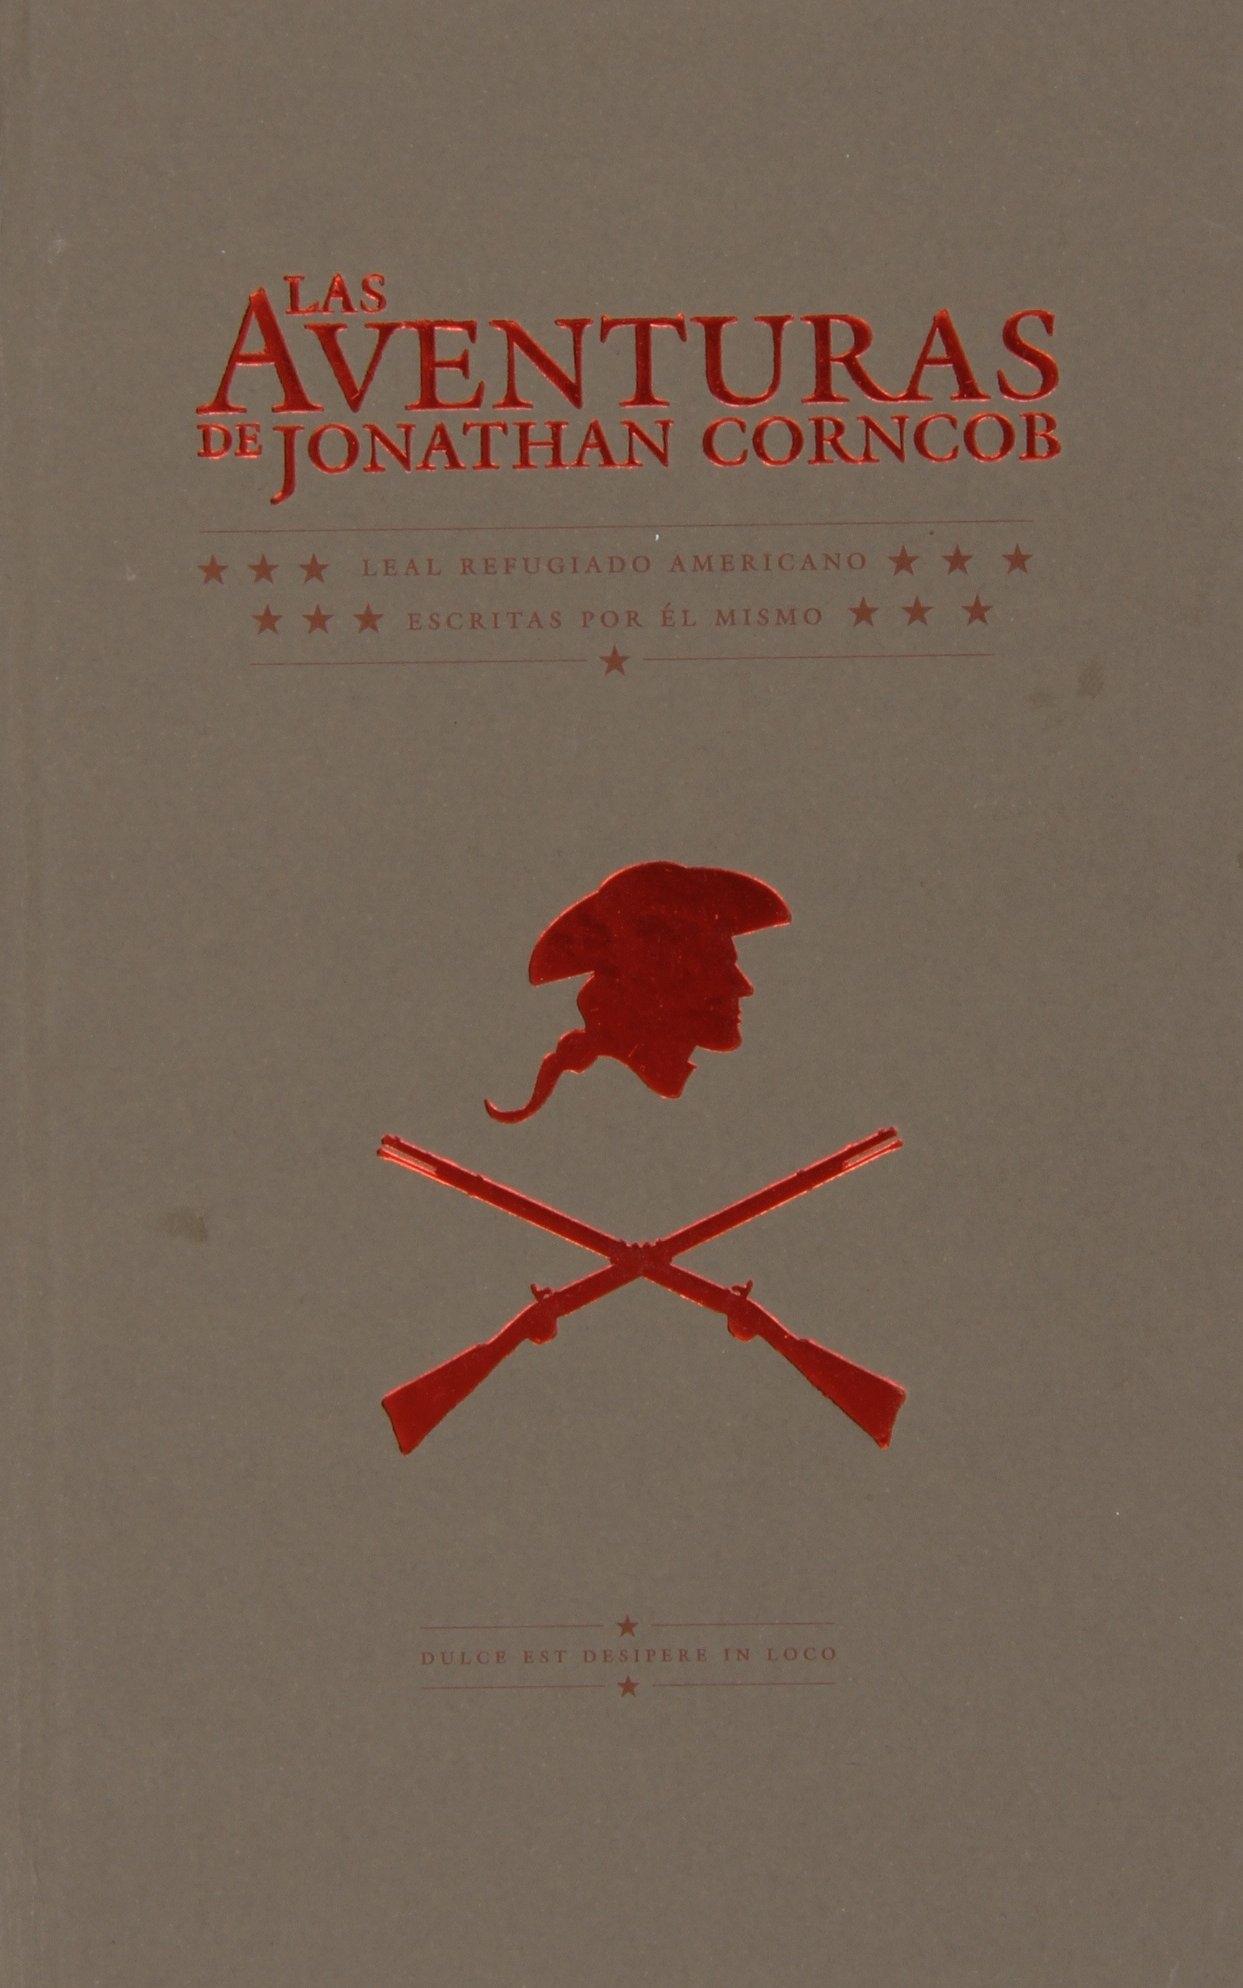 Las Aventuras de Jonathan Corncob "Leal Refugiado Americano, Escritas por Él Mismo"